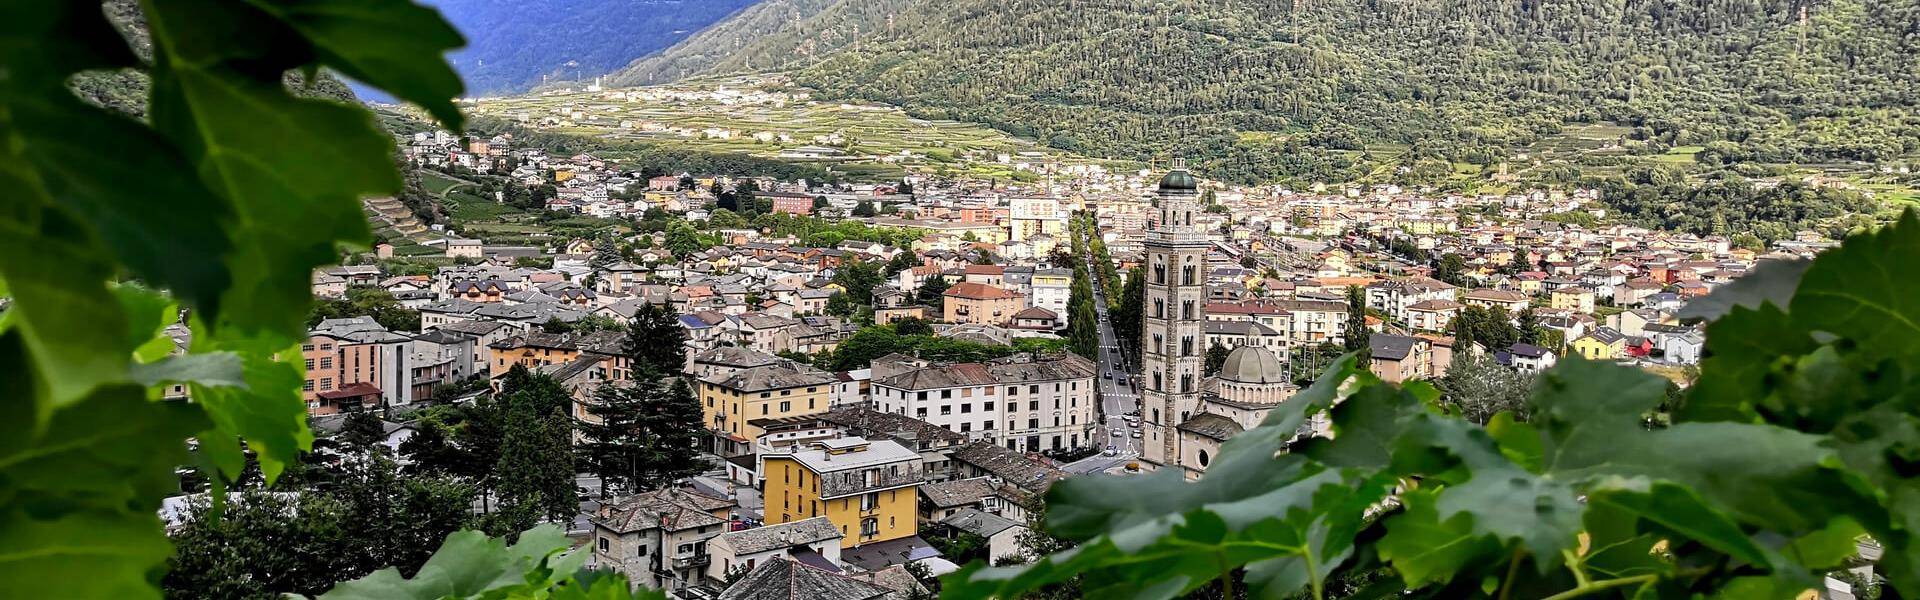 Da Tirano a Grosotto sul Sentiero Valtellina con Speck Menatti